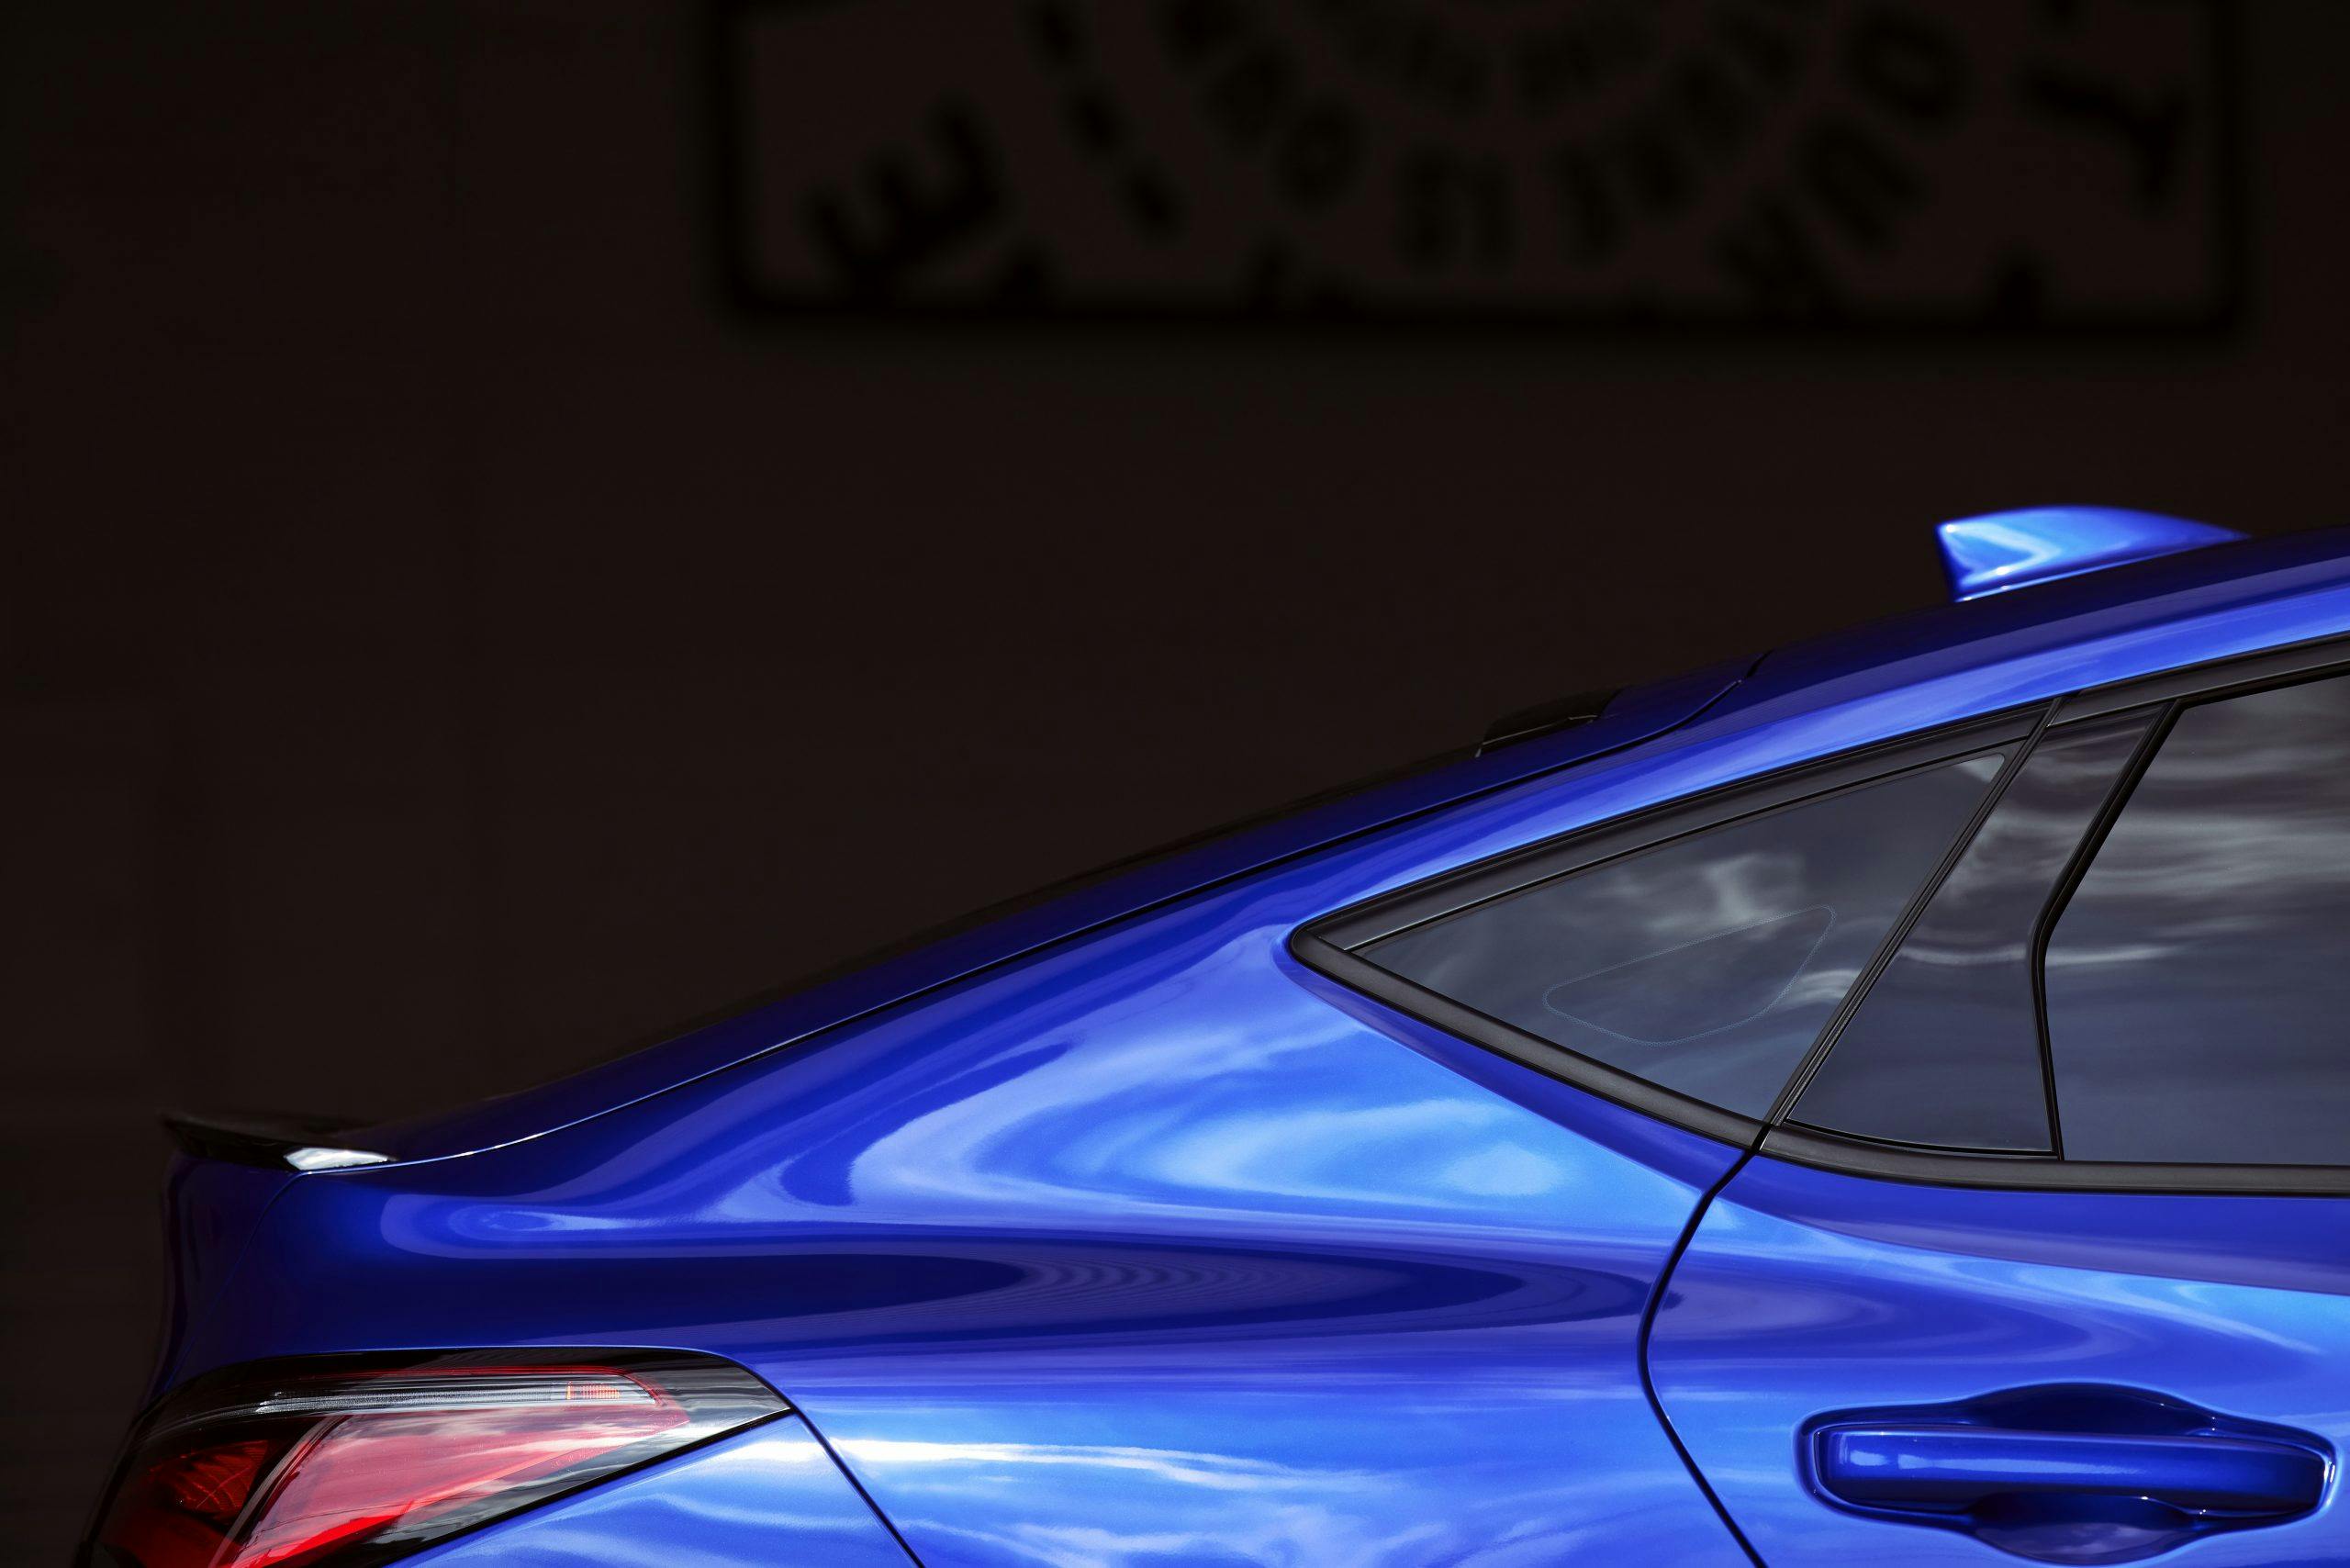 2023 Acura Integra exterior blue rear roofline